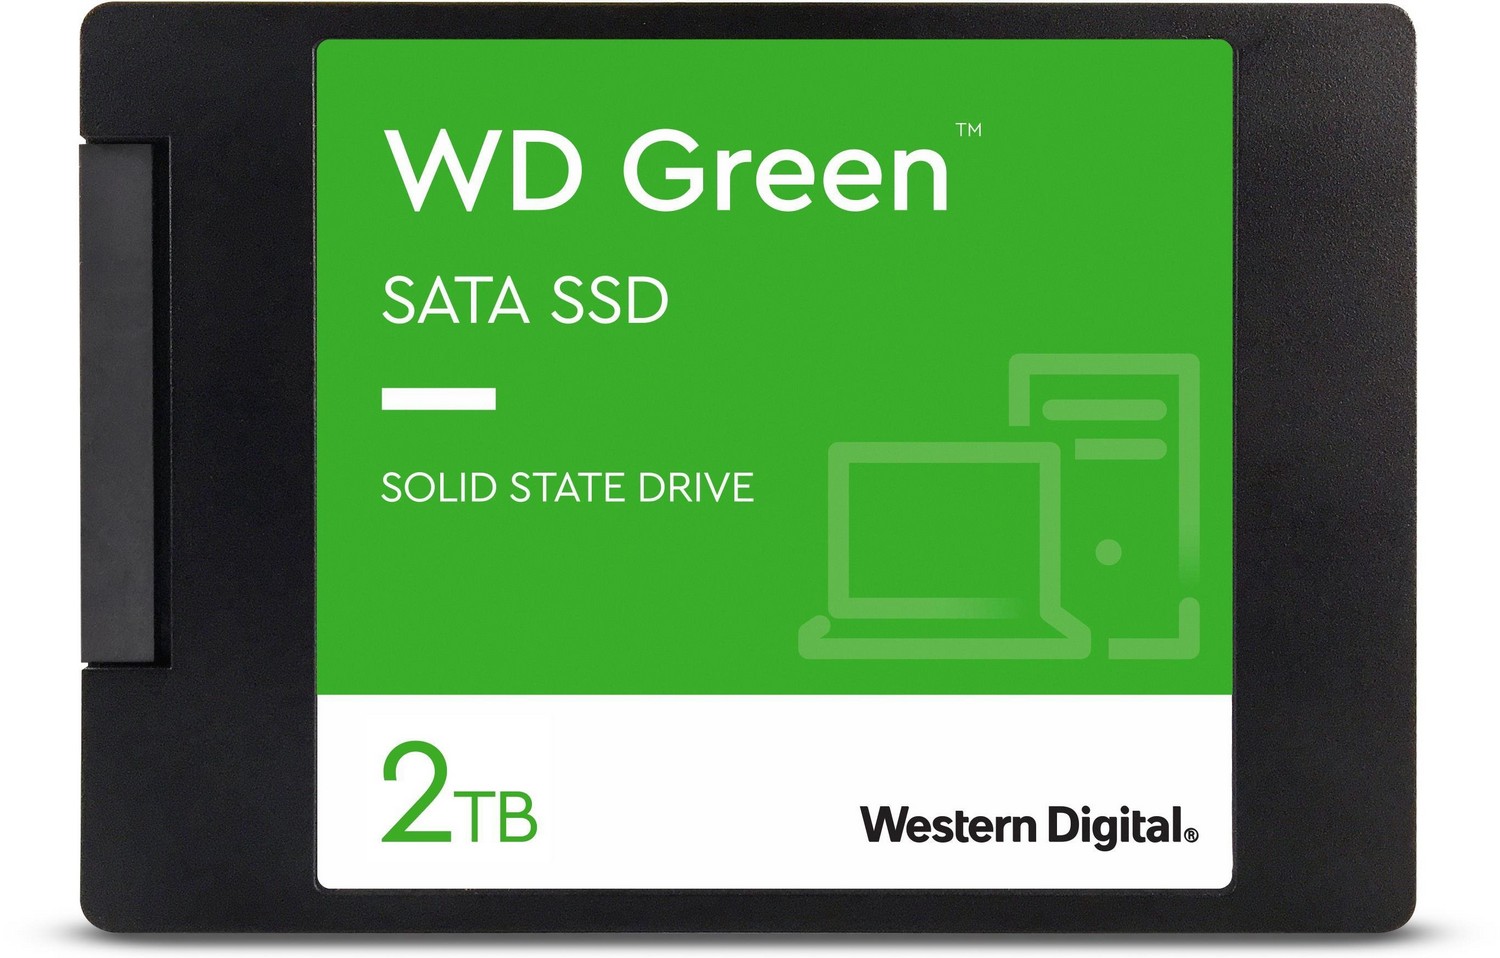 SSD disks - WD Green SSD 2TB